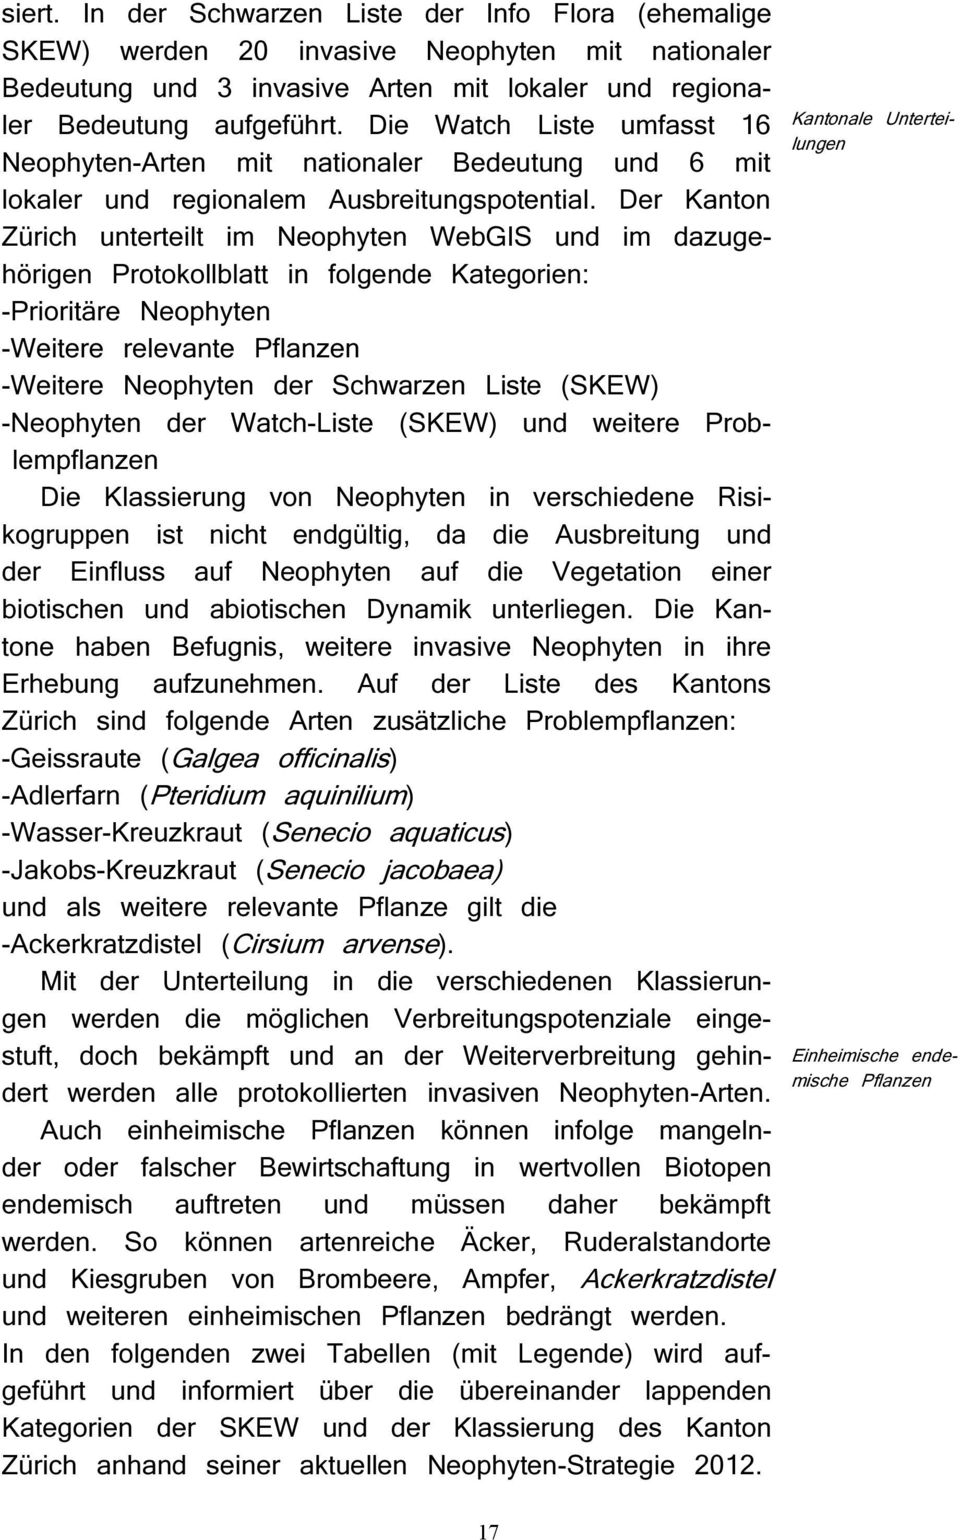 Der Kanton Zürich unterteilt im Neophyten WebGIS und im dazugehörigen Protokollblatt in folgende Kategorien: -Prioritäre Neophyten -Weitere relevante Pflanzen -Weitere Neophyten der Schwarzen Liste